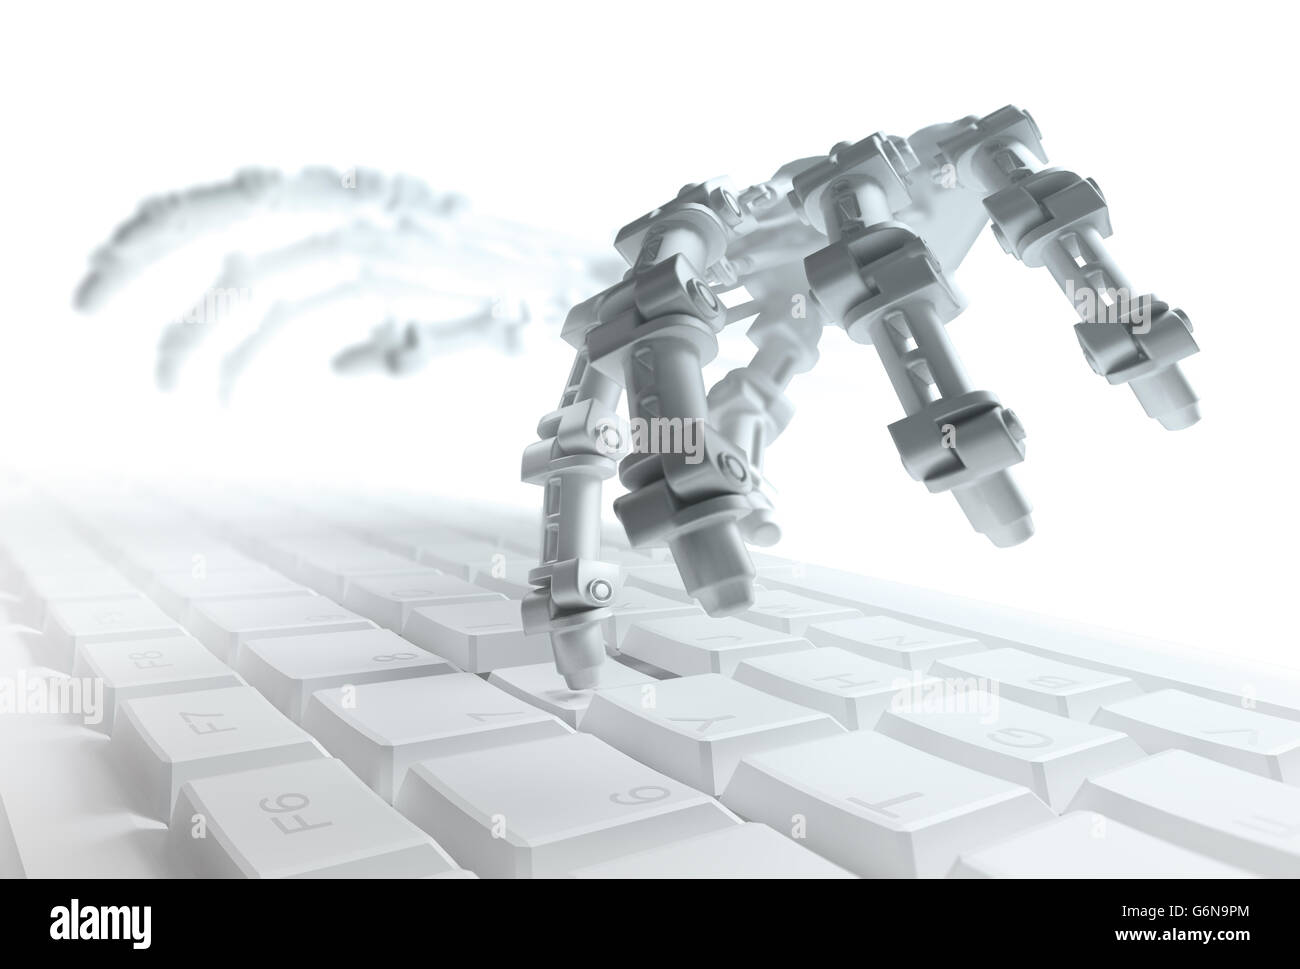 Robot de la saisie sur un clavier d'ordinateur - Automatisation et AI concept recherche 3d illustration Banque D'Images